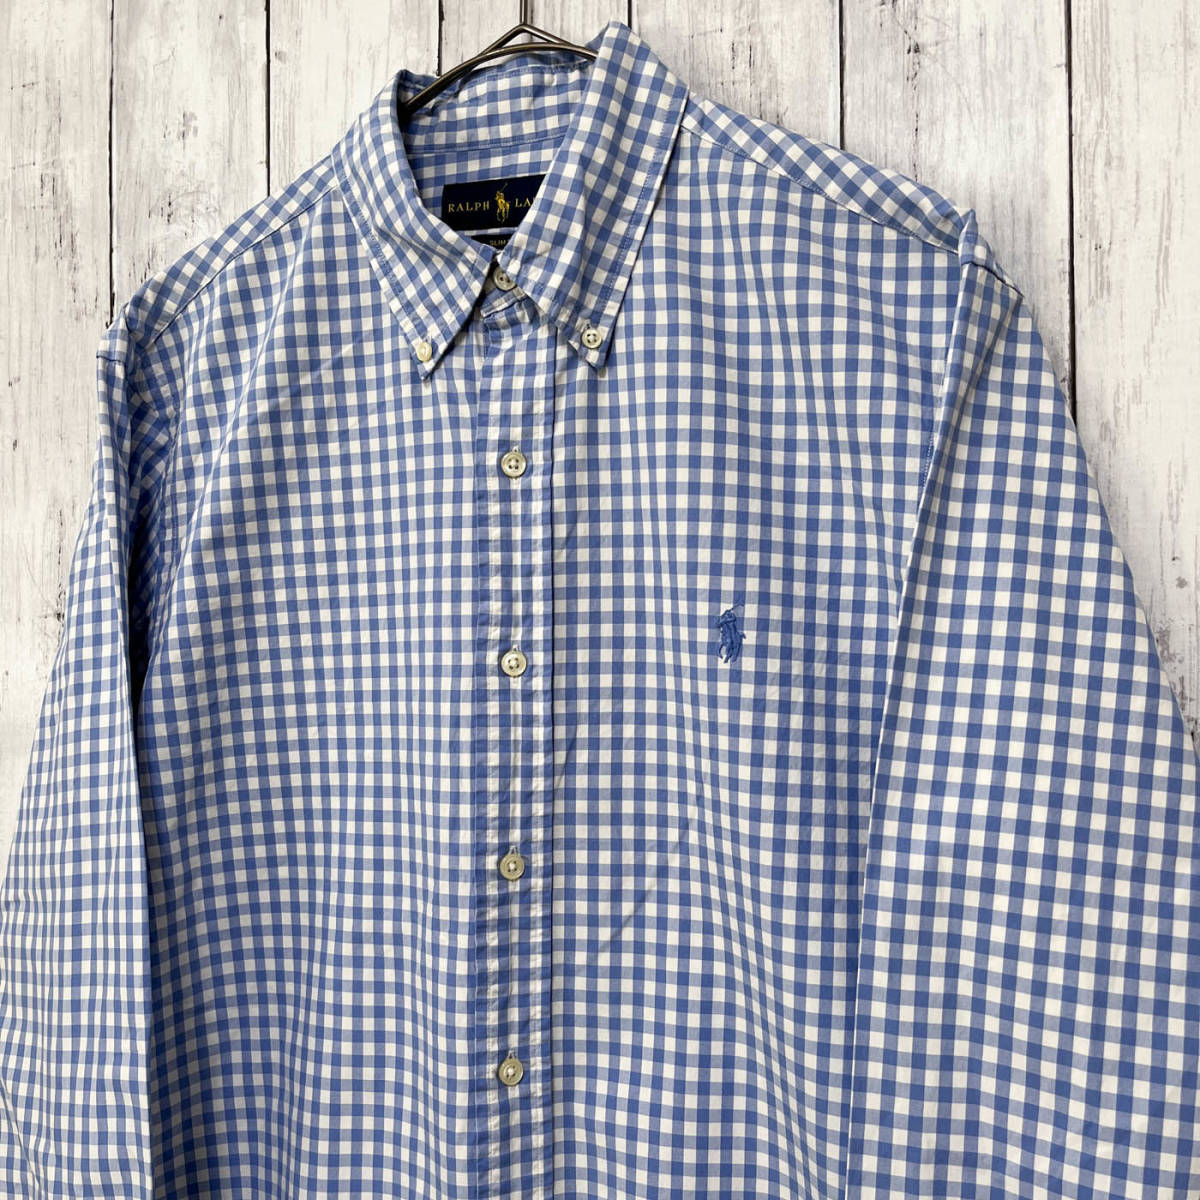 ラルフローレン Ralph Lauren SLIM FIT チェックシャツ 長袖シャツ メンズ ワンポイント コットン100% Mサイズ 5‐179_画像3